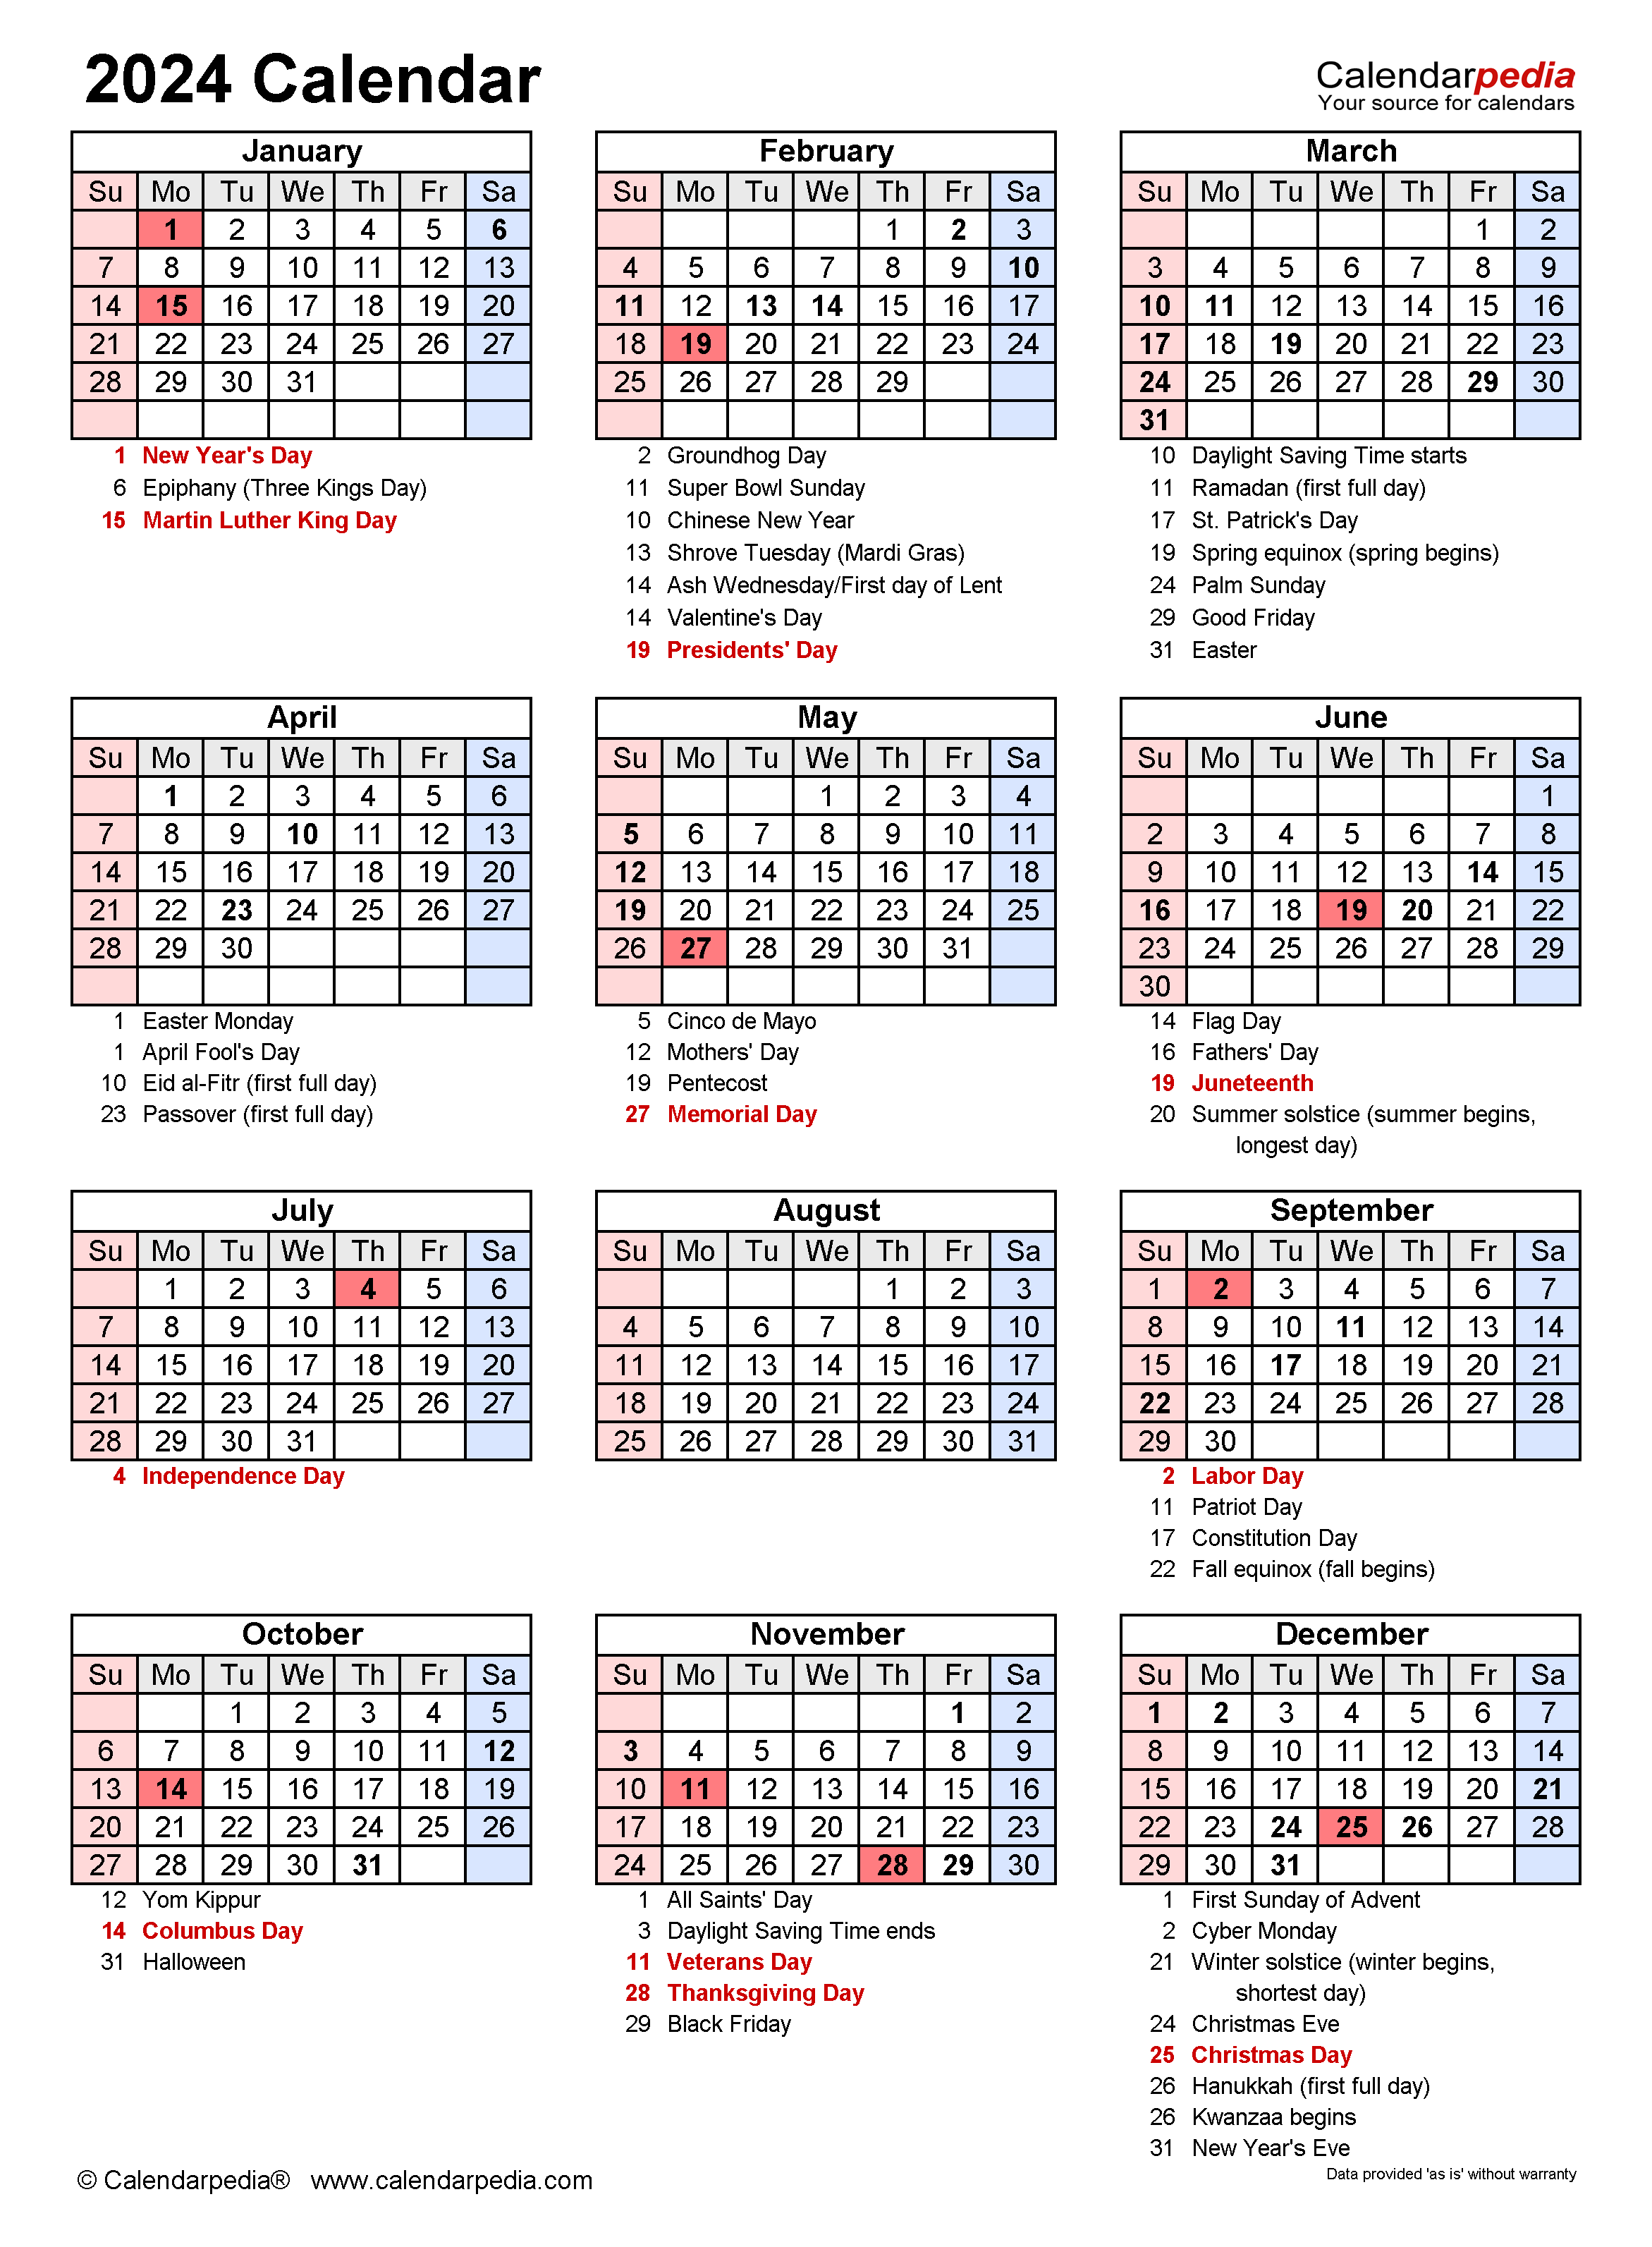 2024 Printable Calendar With Holidays AriaATR Photos - Free Printable 2024 Calendar With Holidays & Moon Phases